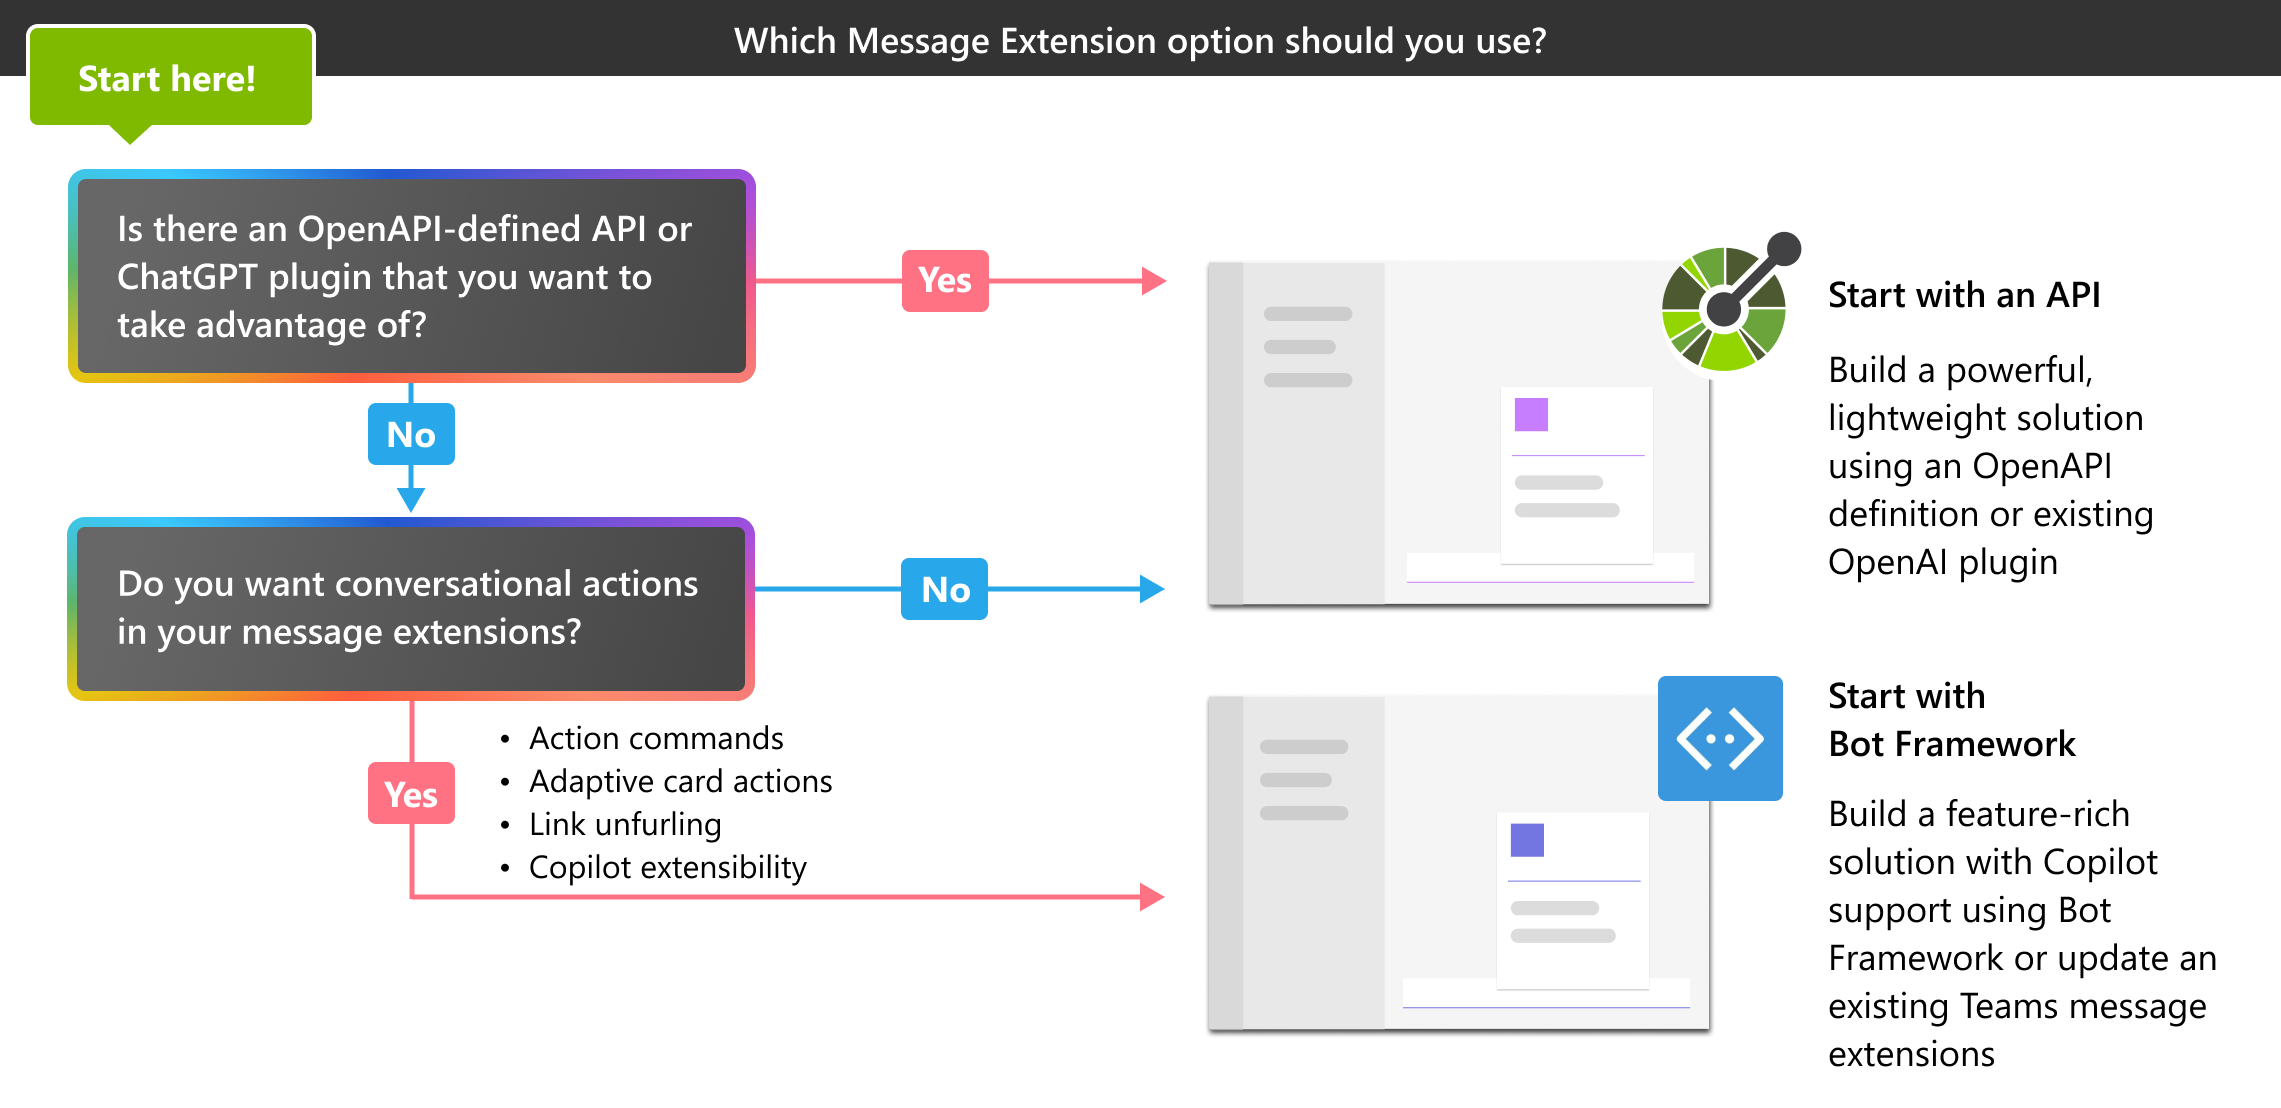 屏幕截图显示了决策树，该树可帮助用户在基于 API 的消息扩展和基于机器人的消息扩展之间进行选择。